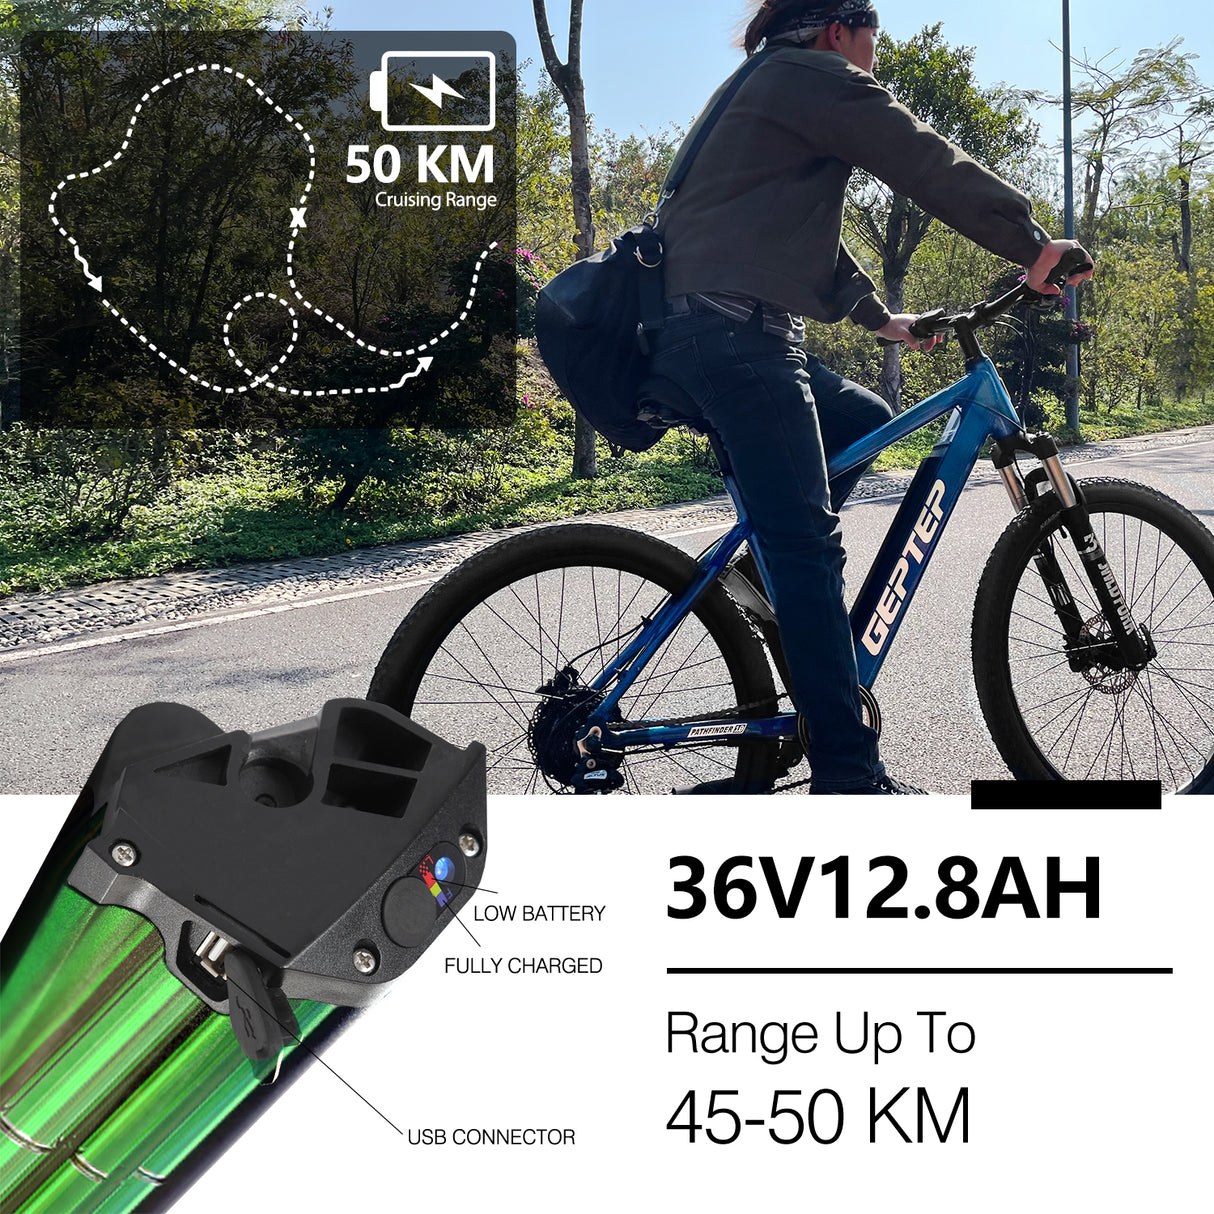 GEPTEP Vélo électrique Pathfinder 1.0